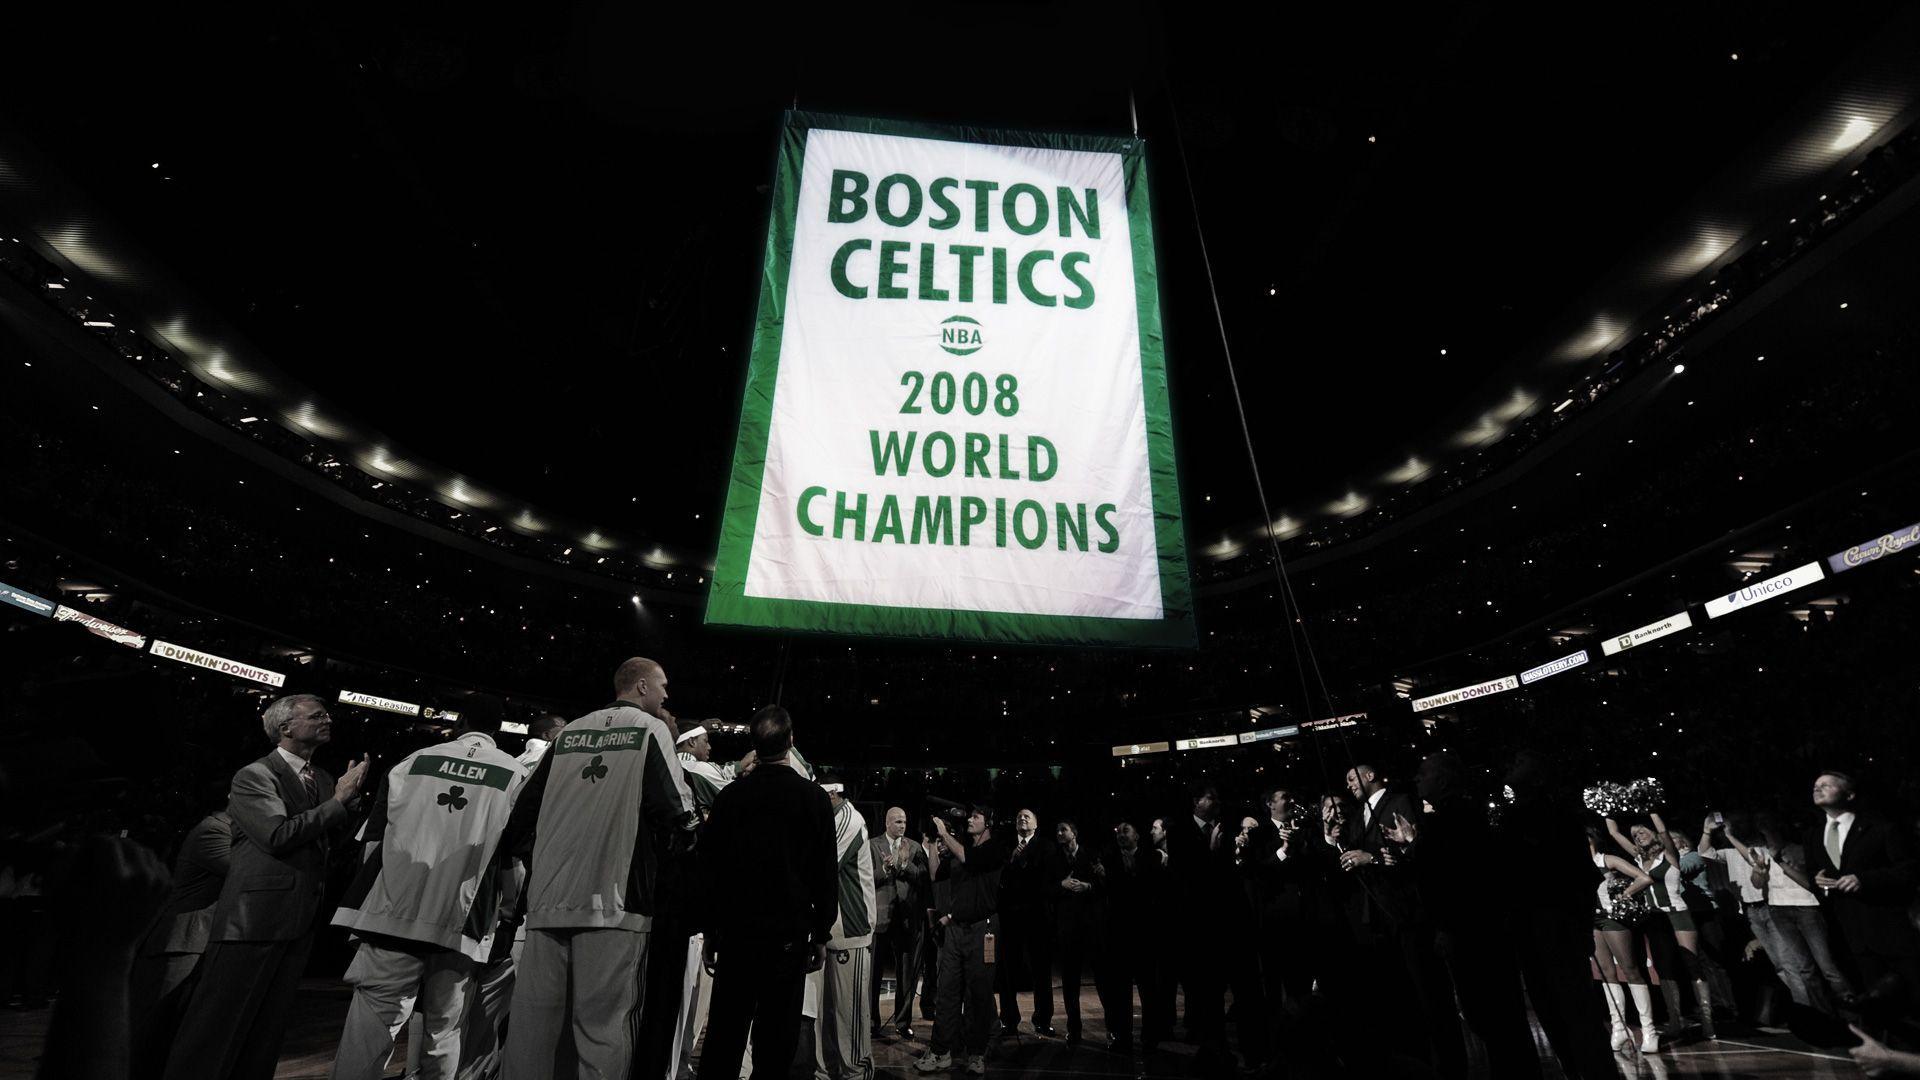 Wallpaper Widescreen Bannerraise Boston Celtics Wallpaper